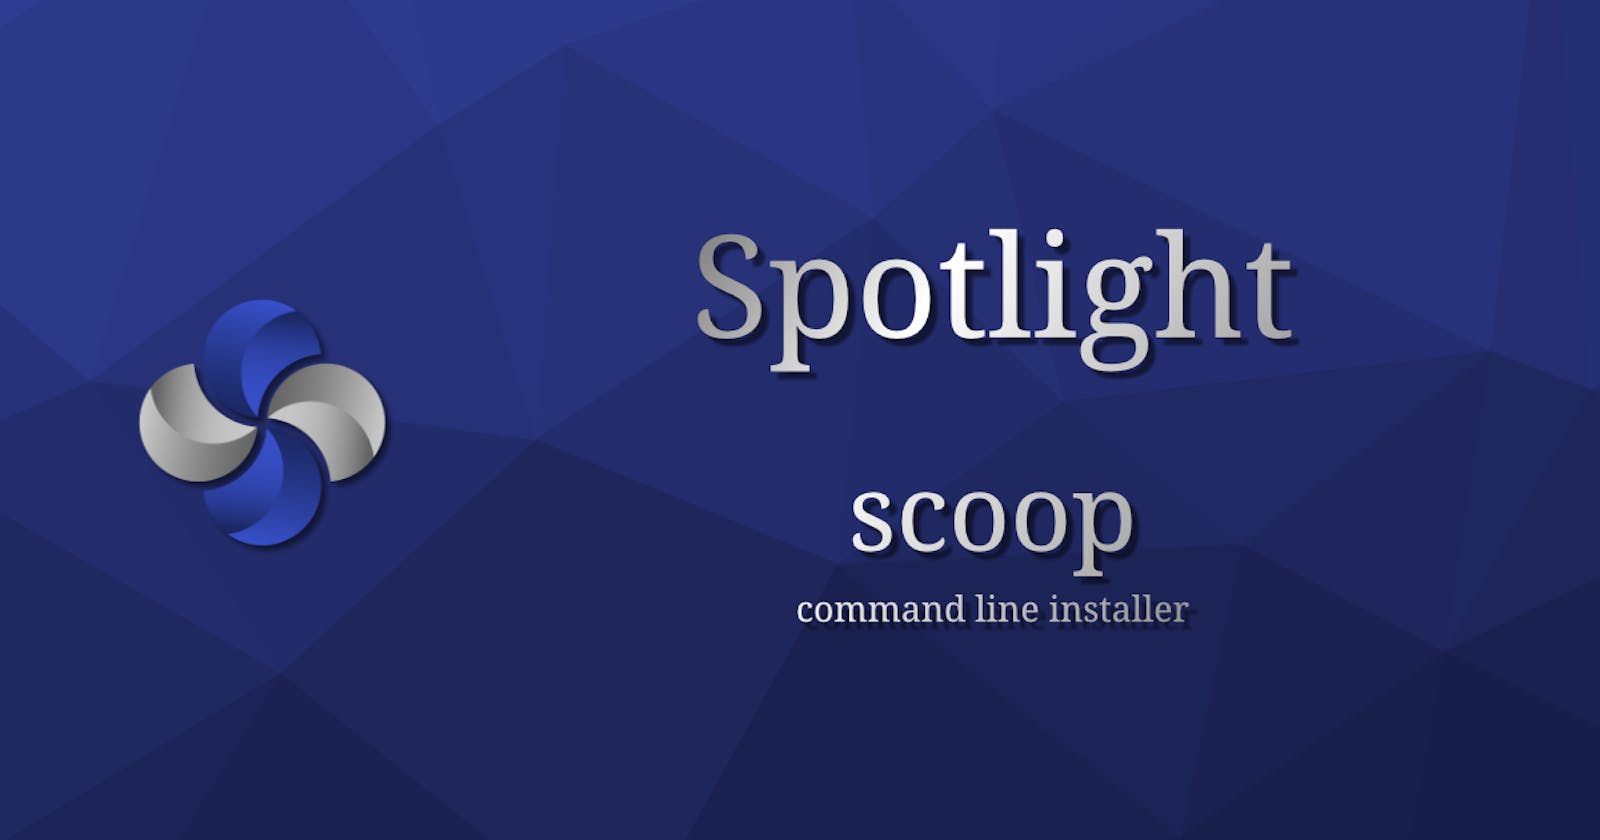 scoop - command line installer